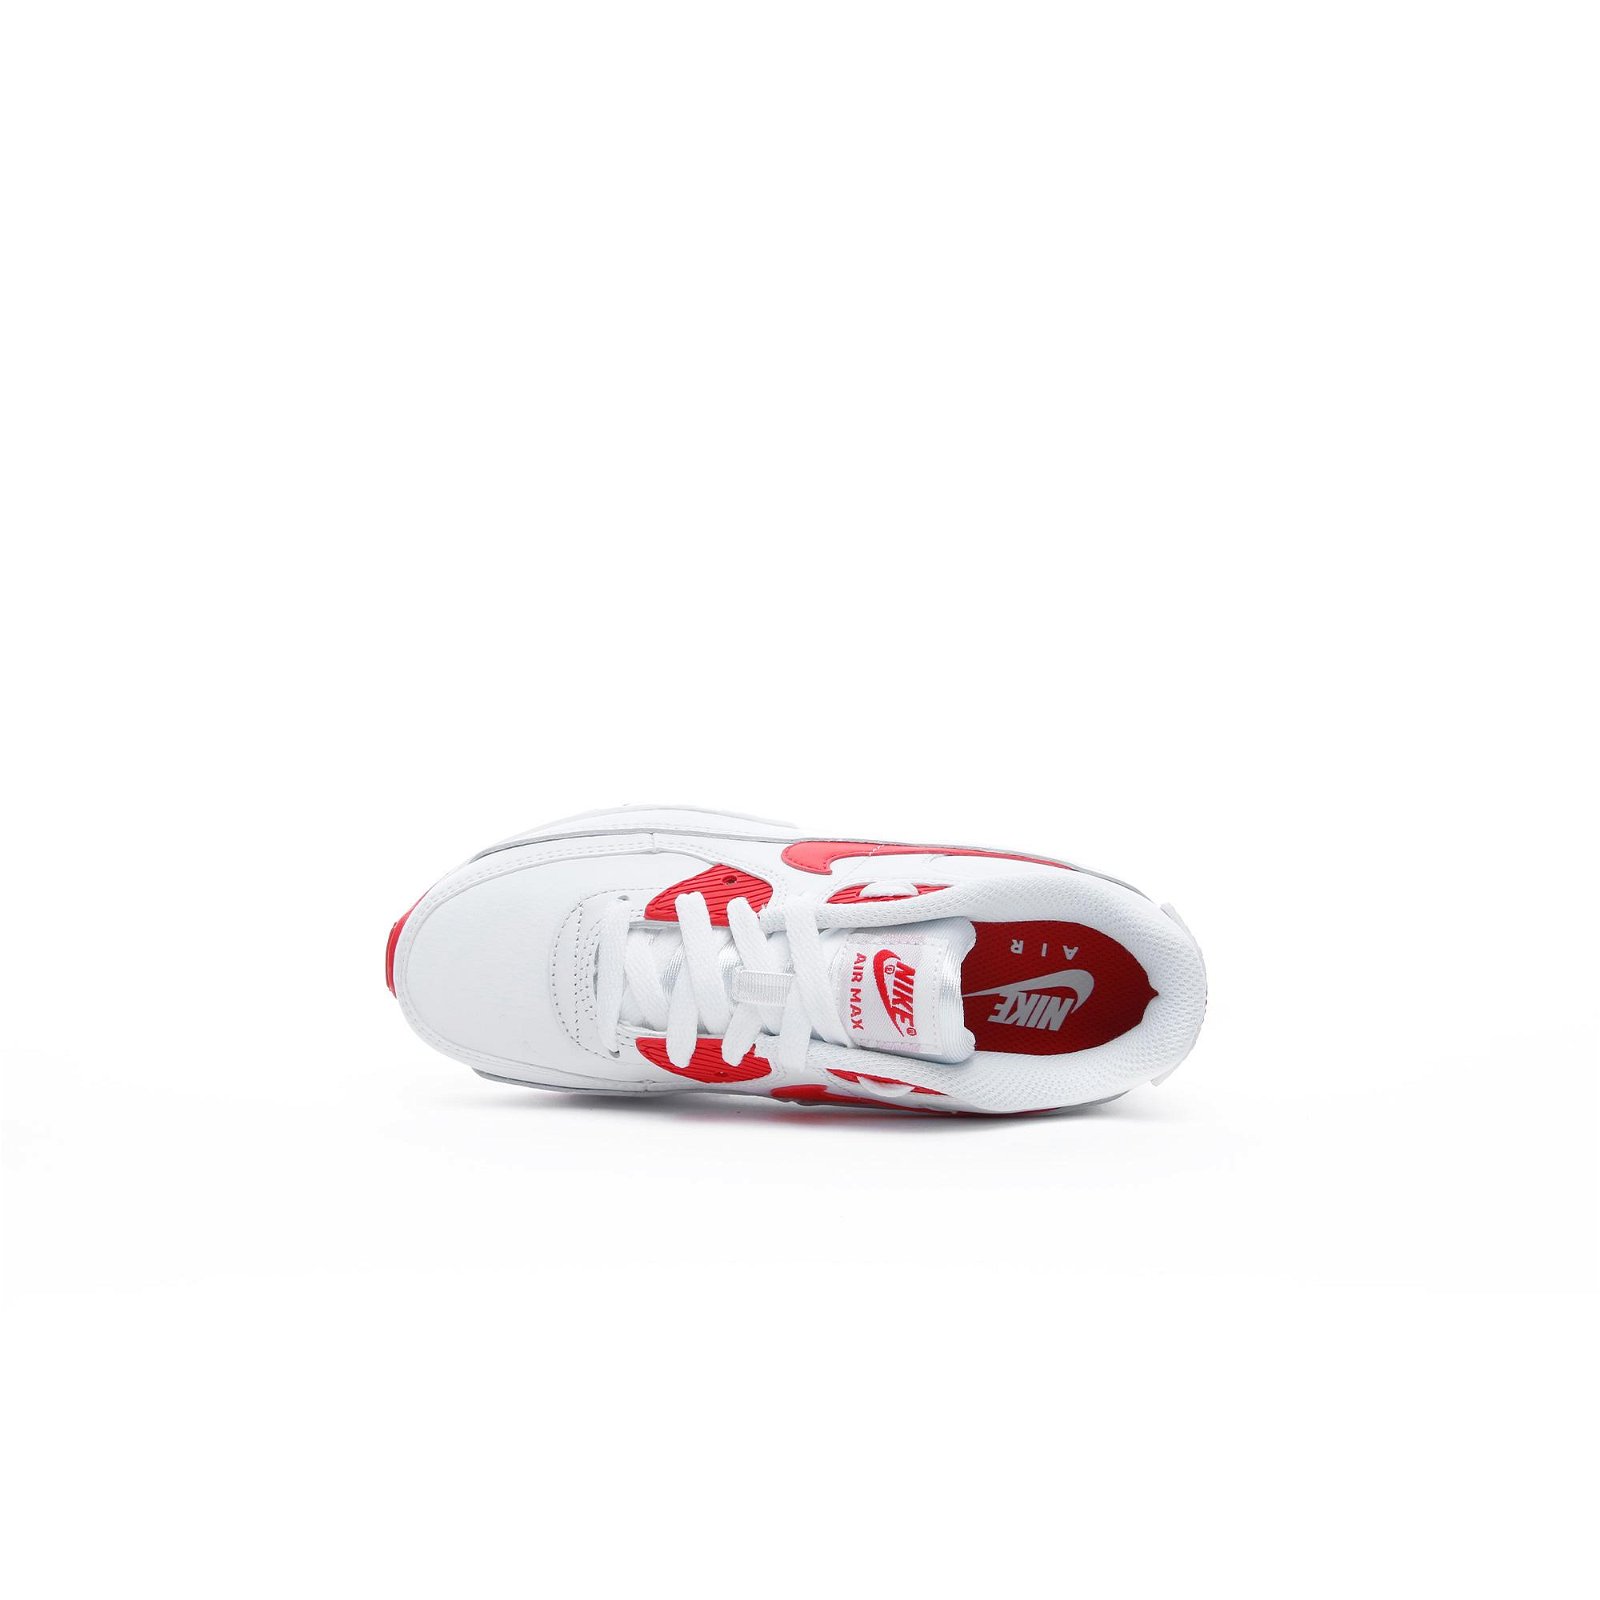 Nike Air Max 90 LTR Beyaz-Kırmızı Spor Ayakkabı